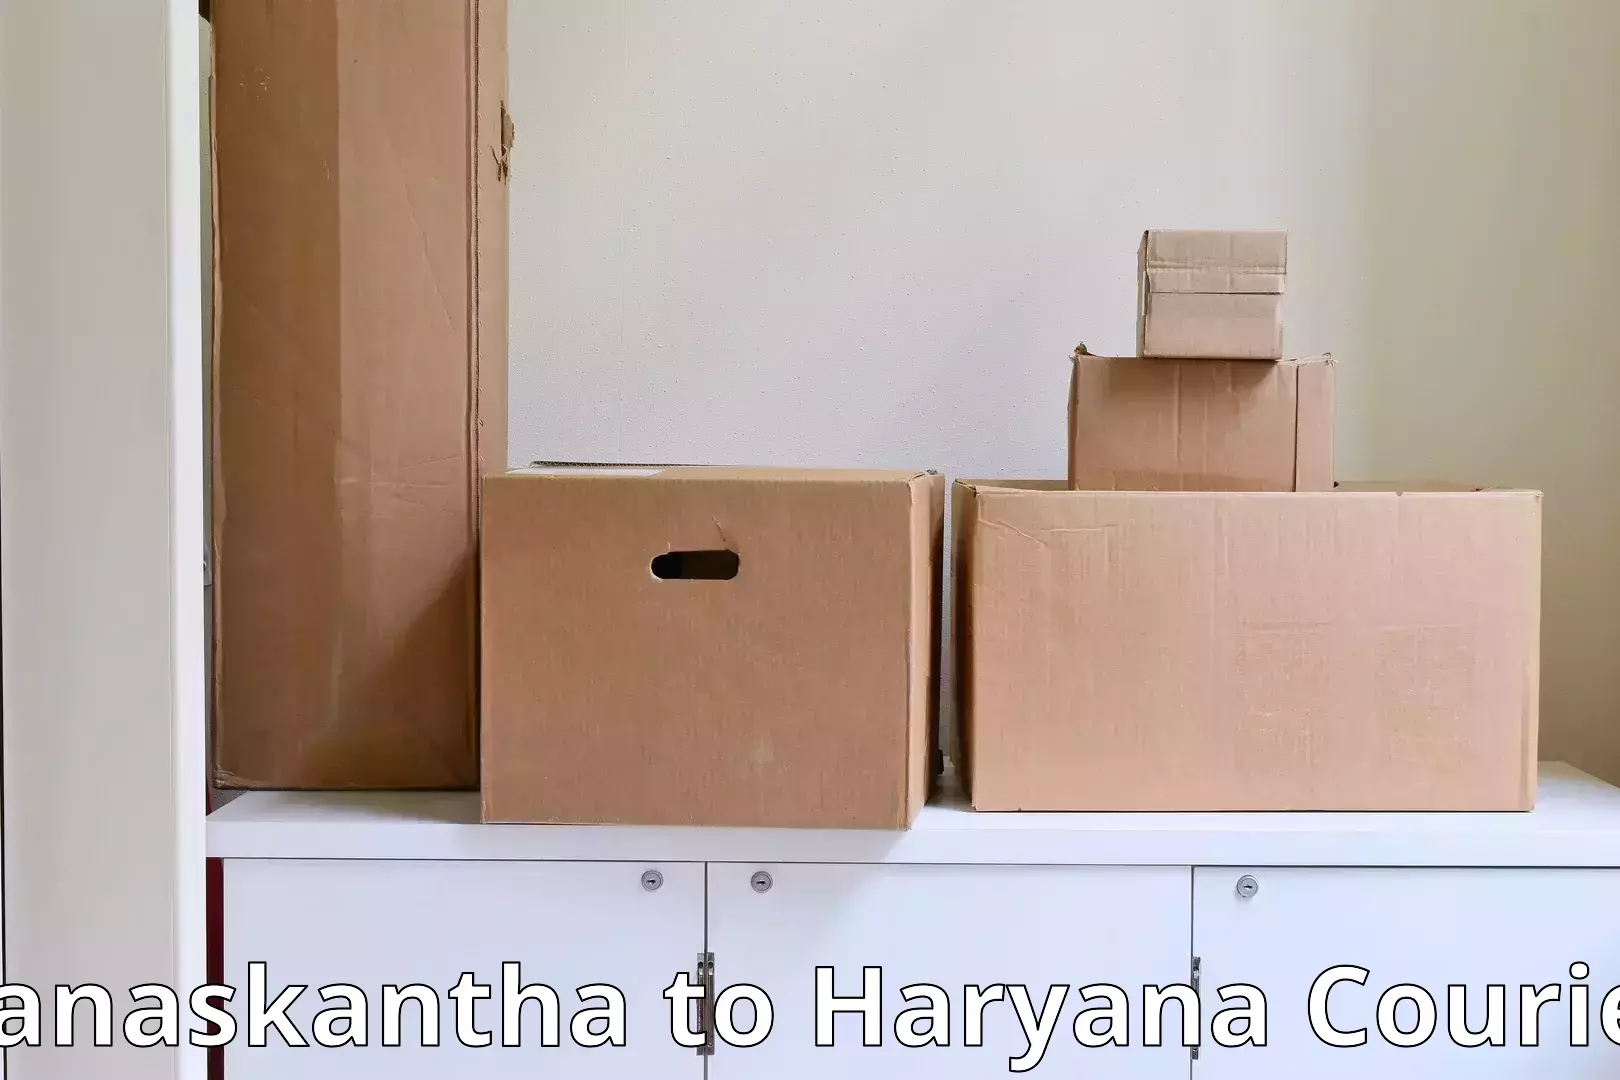 Moving and storage services Banaskantha to Barwala